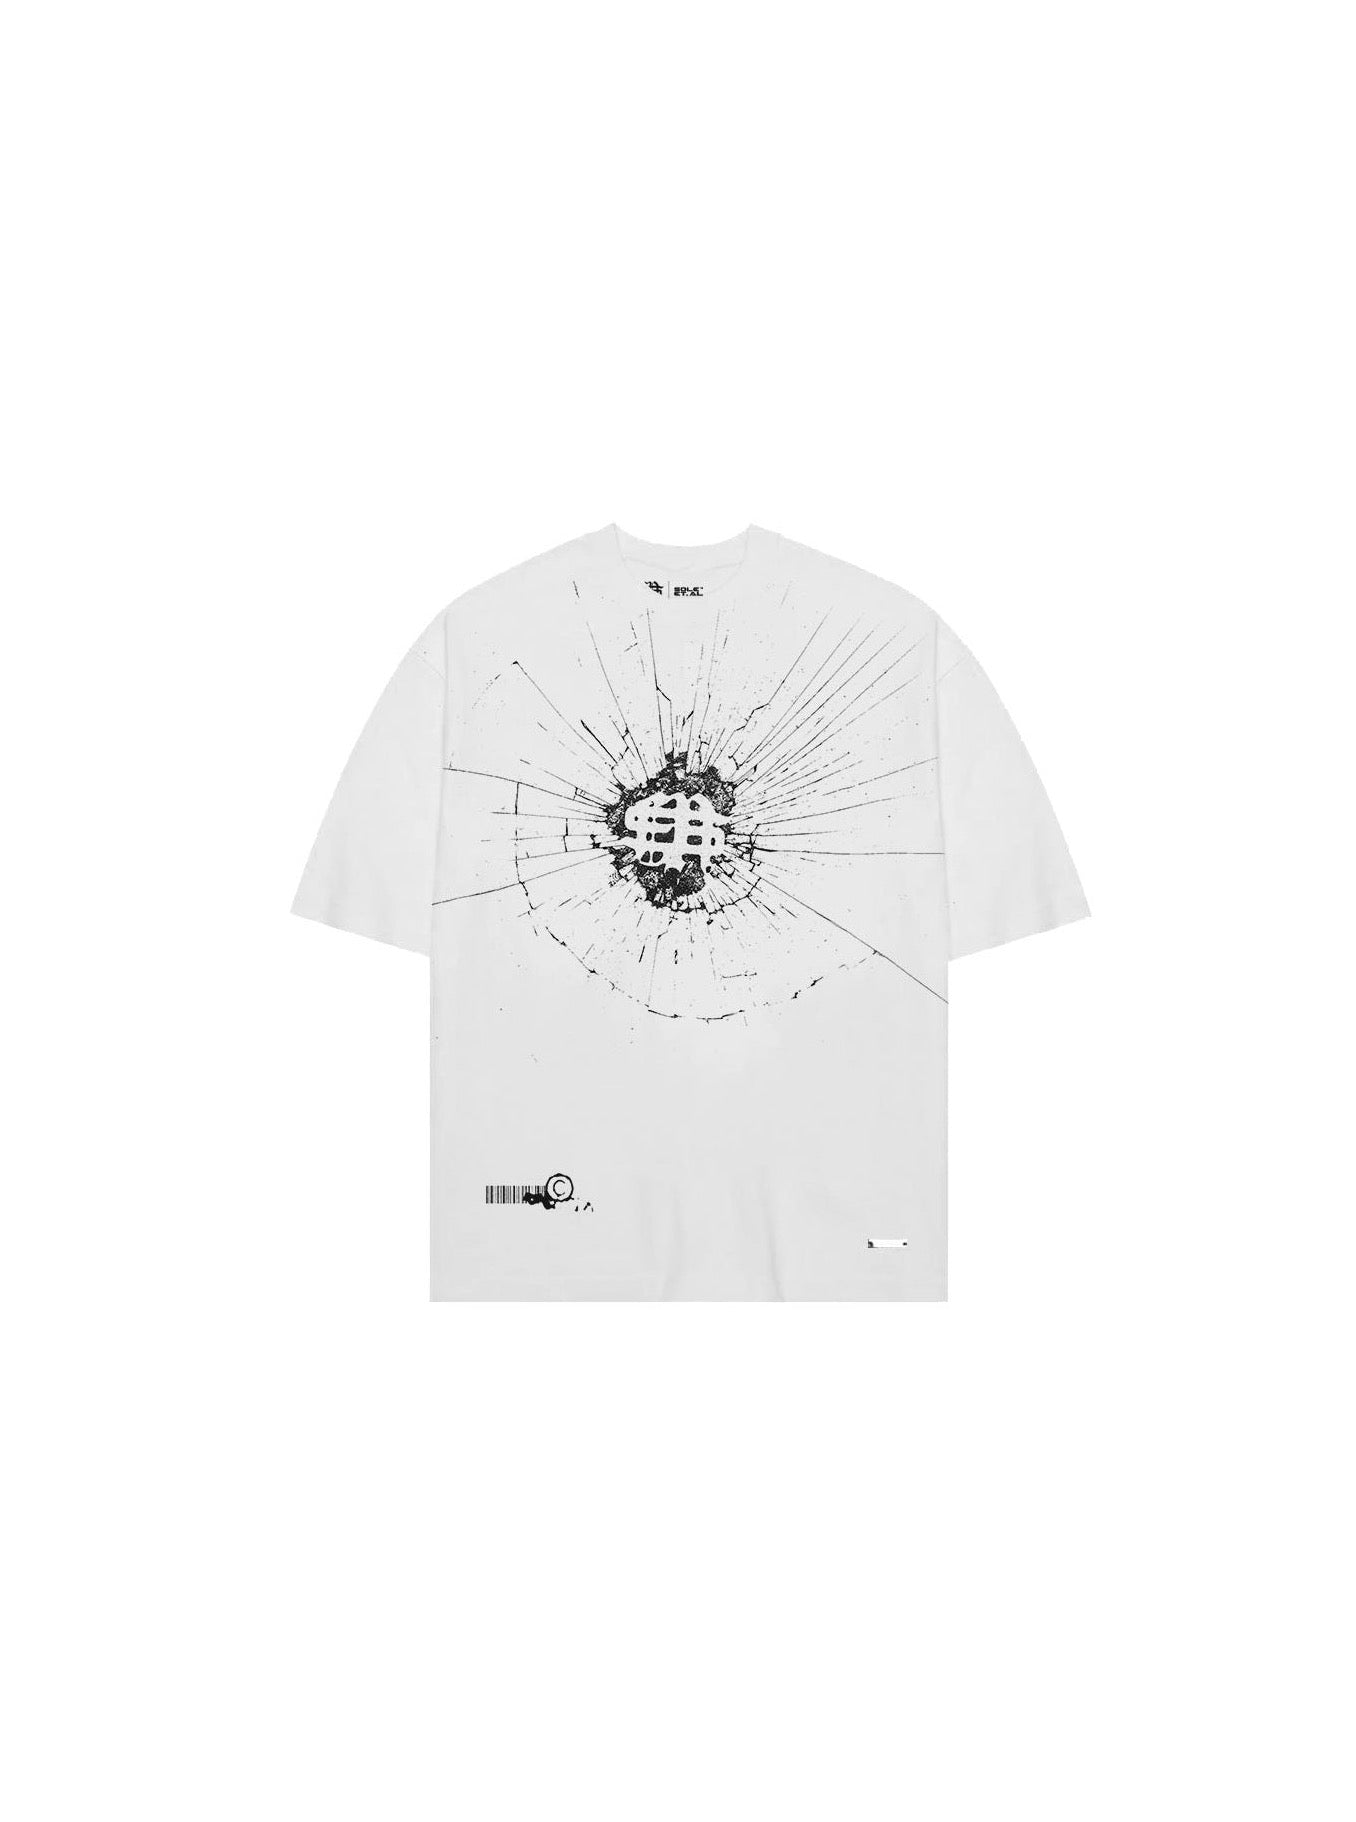 ソール et.アル・フラグメント Tシャツ : ホワイト / ブラック